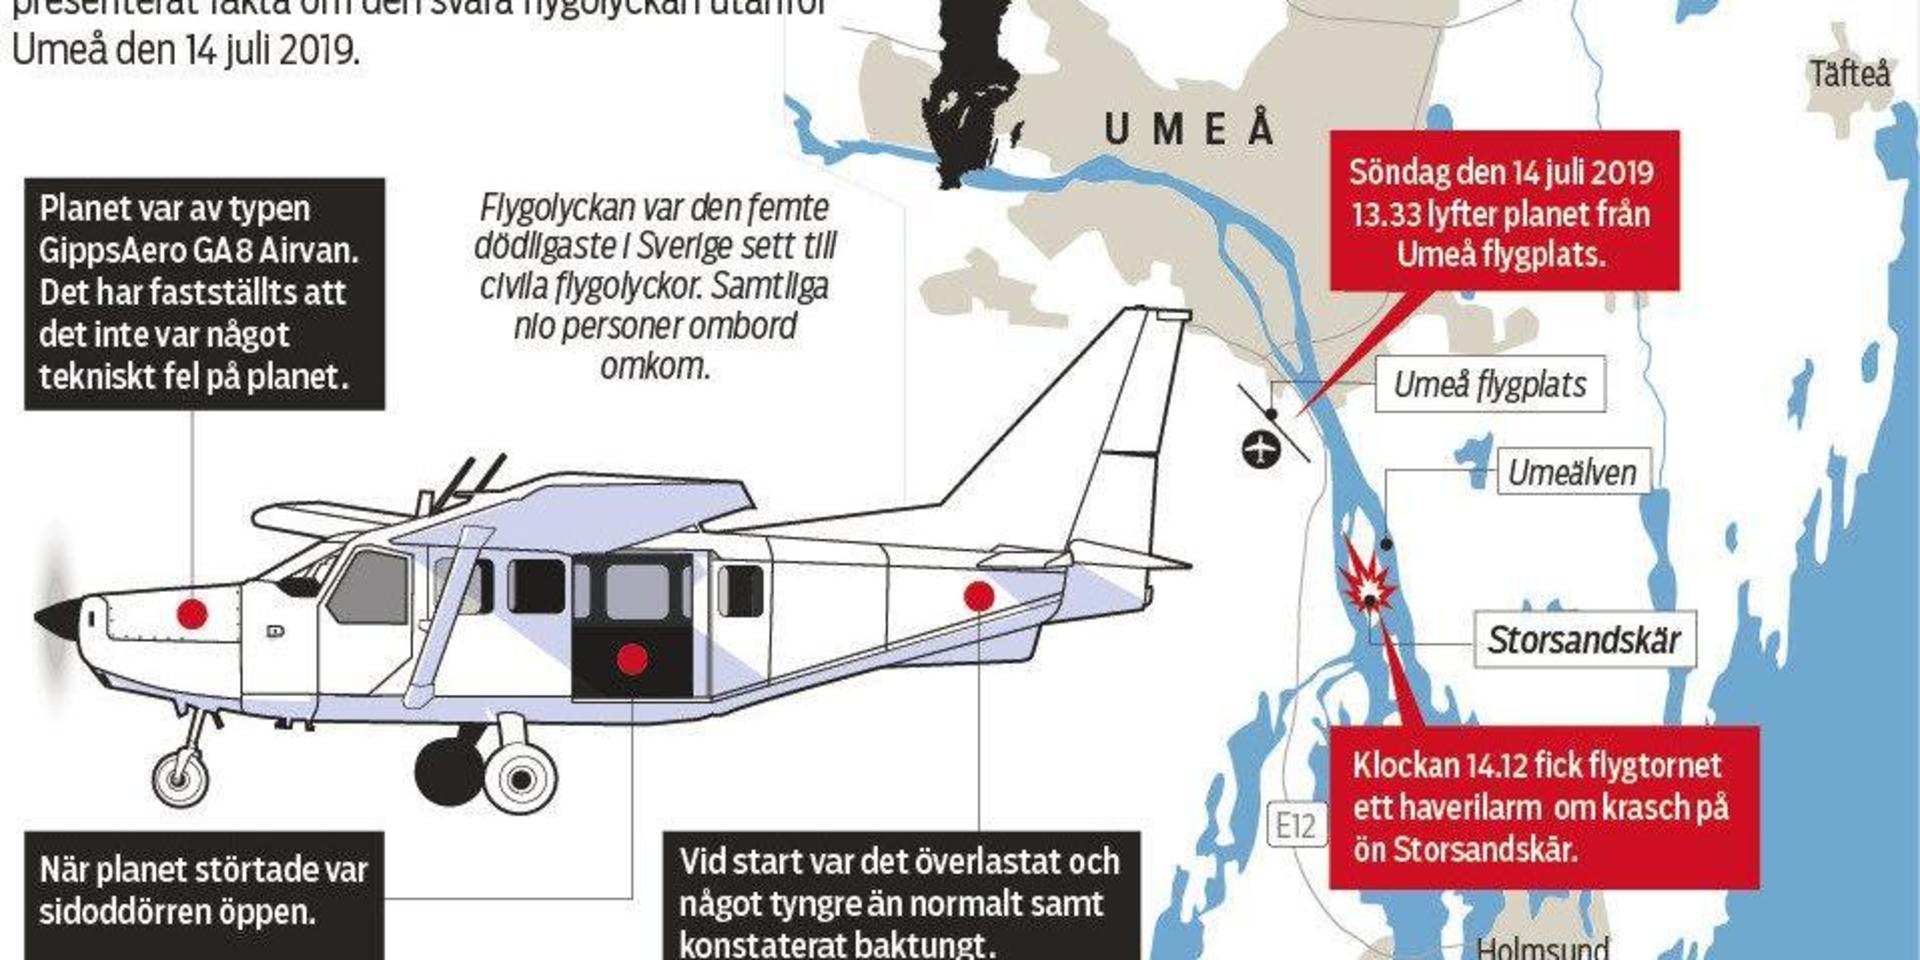 Samtliga nio personer ombord omkom när planet kraschade på ön Storsandskär strax utanför Umeå.